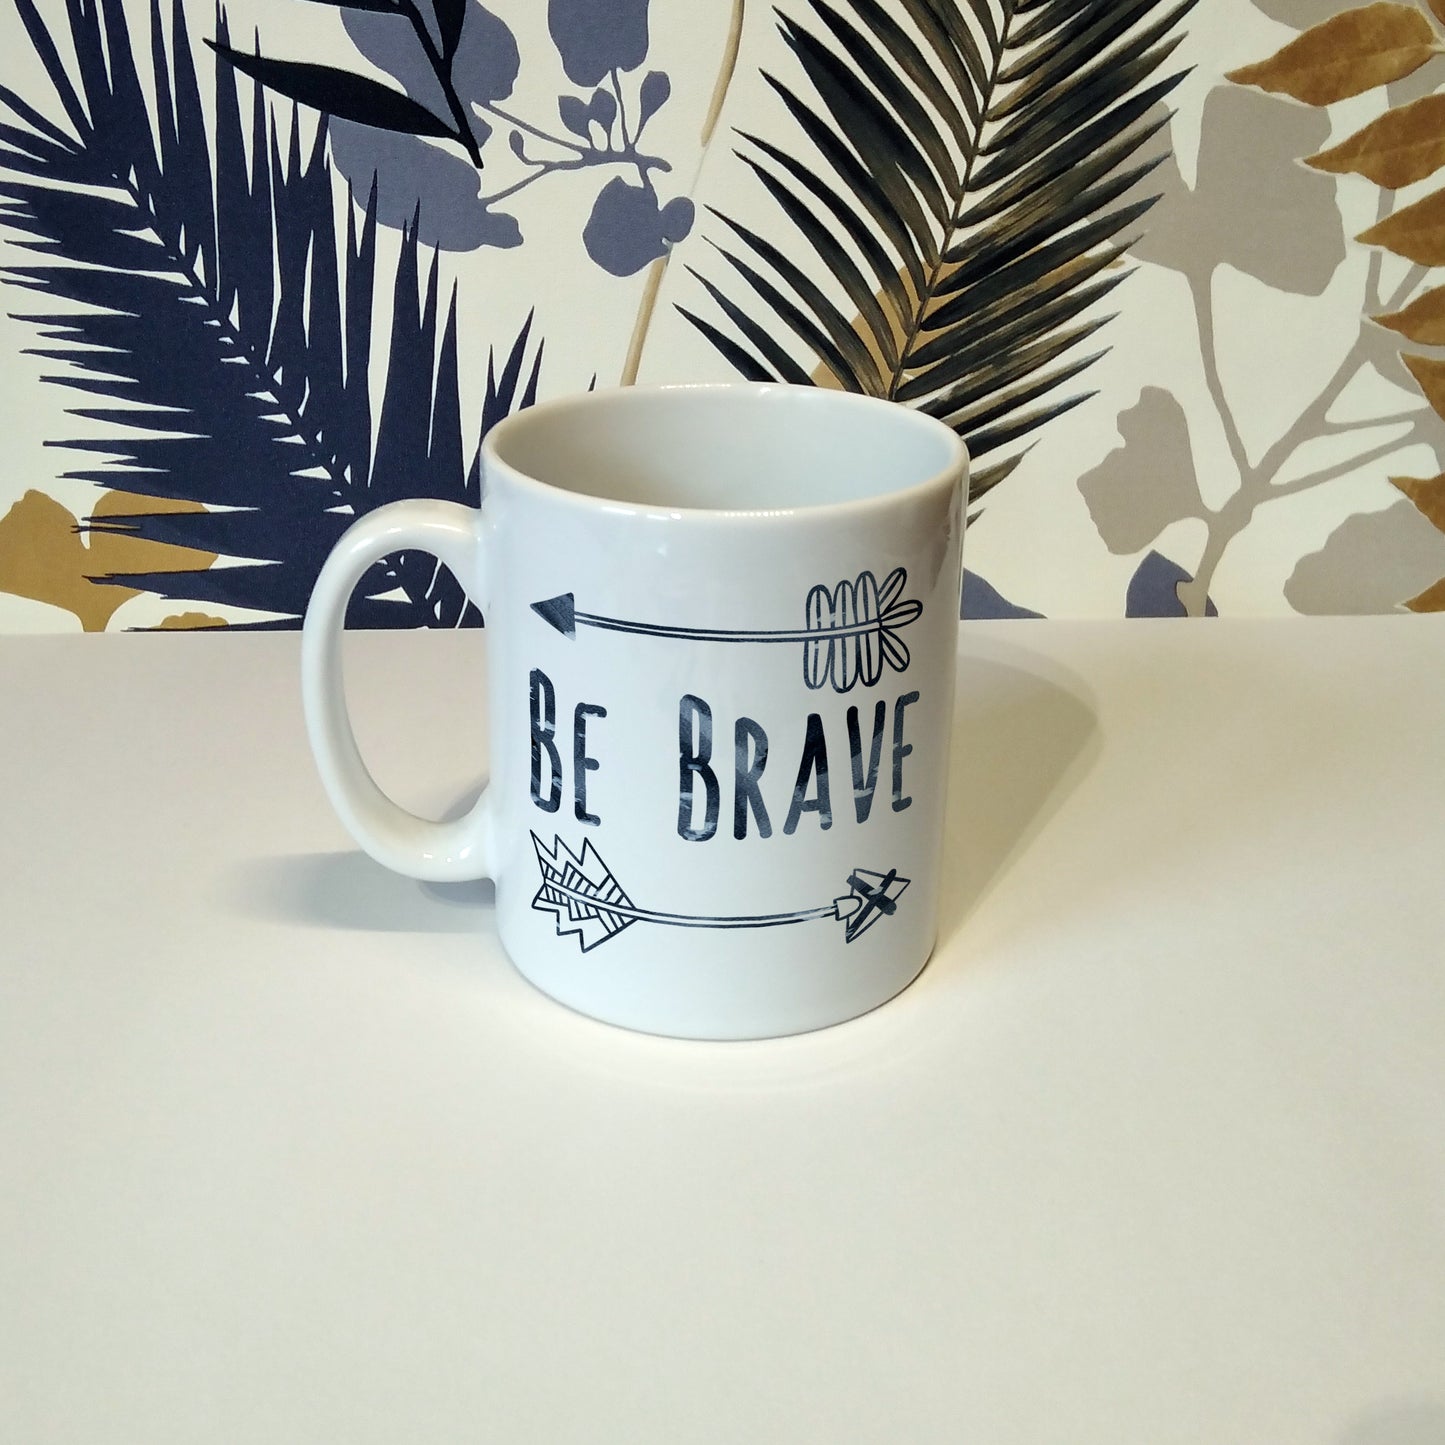 Be brave | Ceramic mug